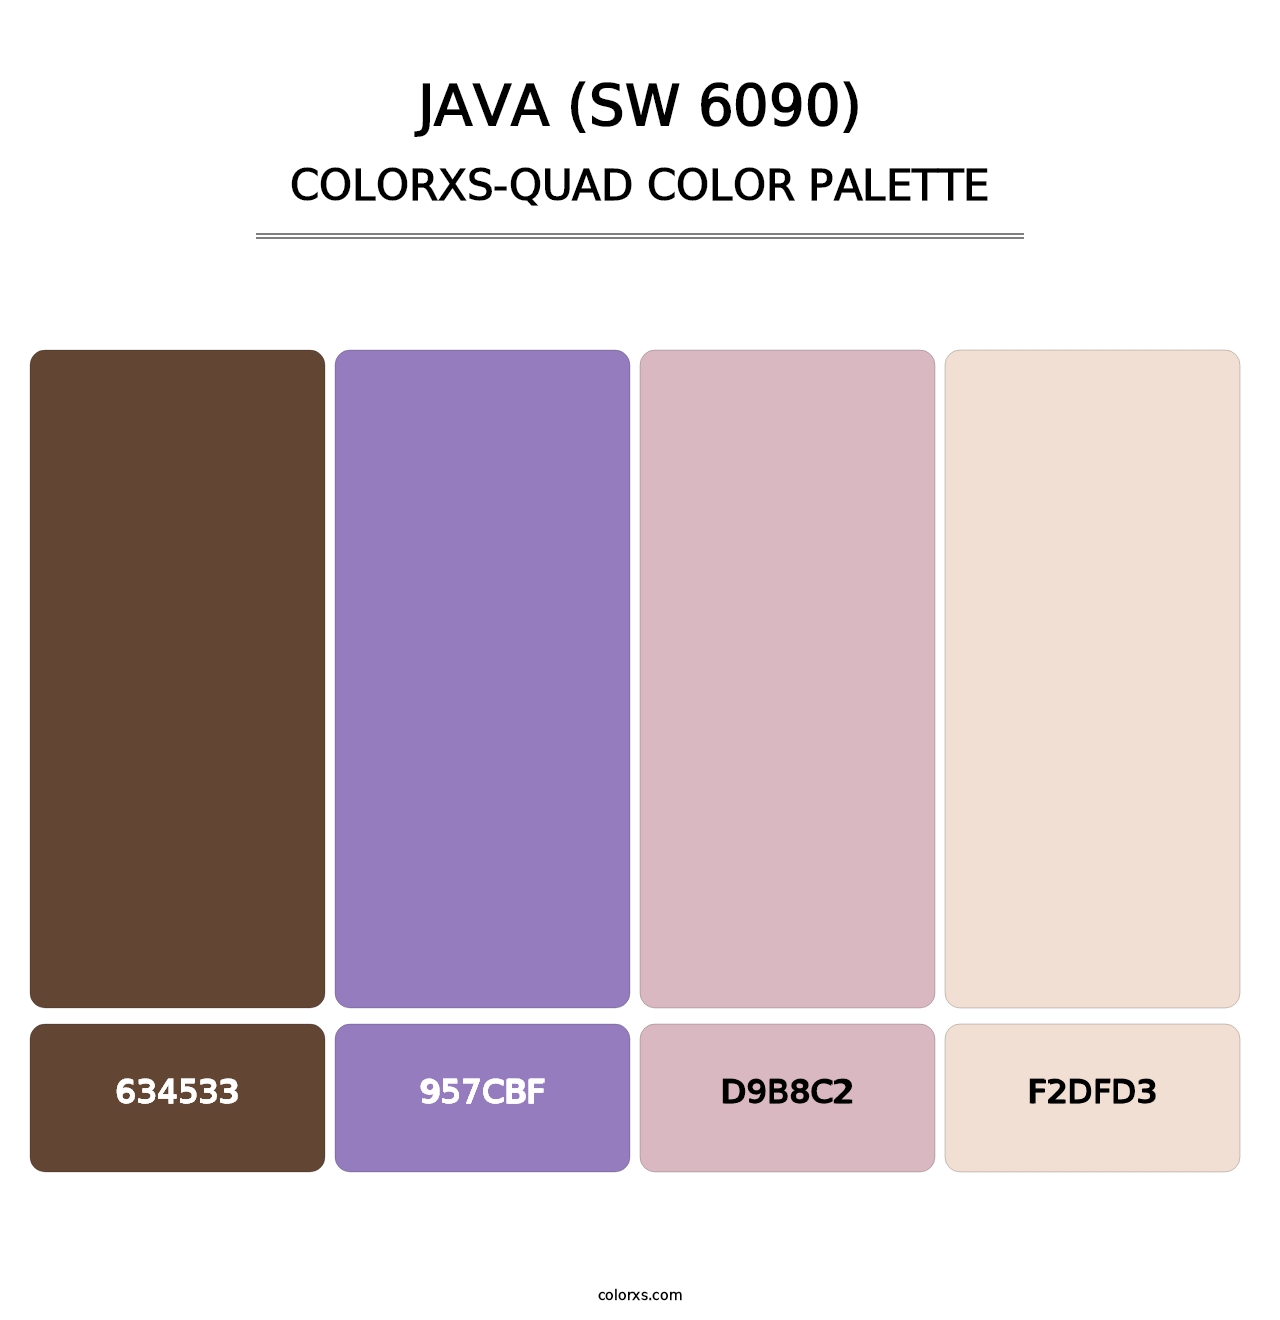 Java (SW 6090) - Colorxs Quad Palette